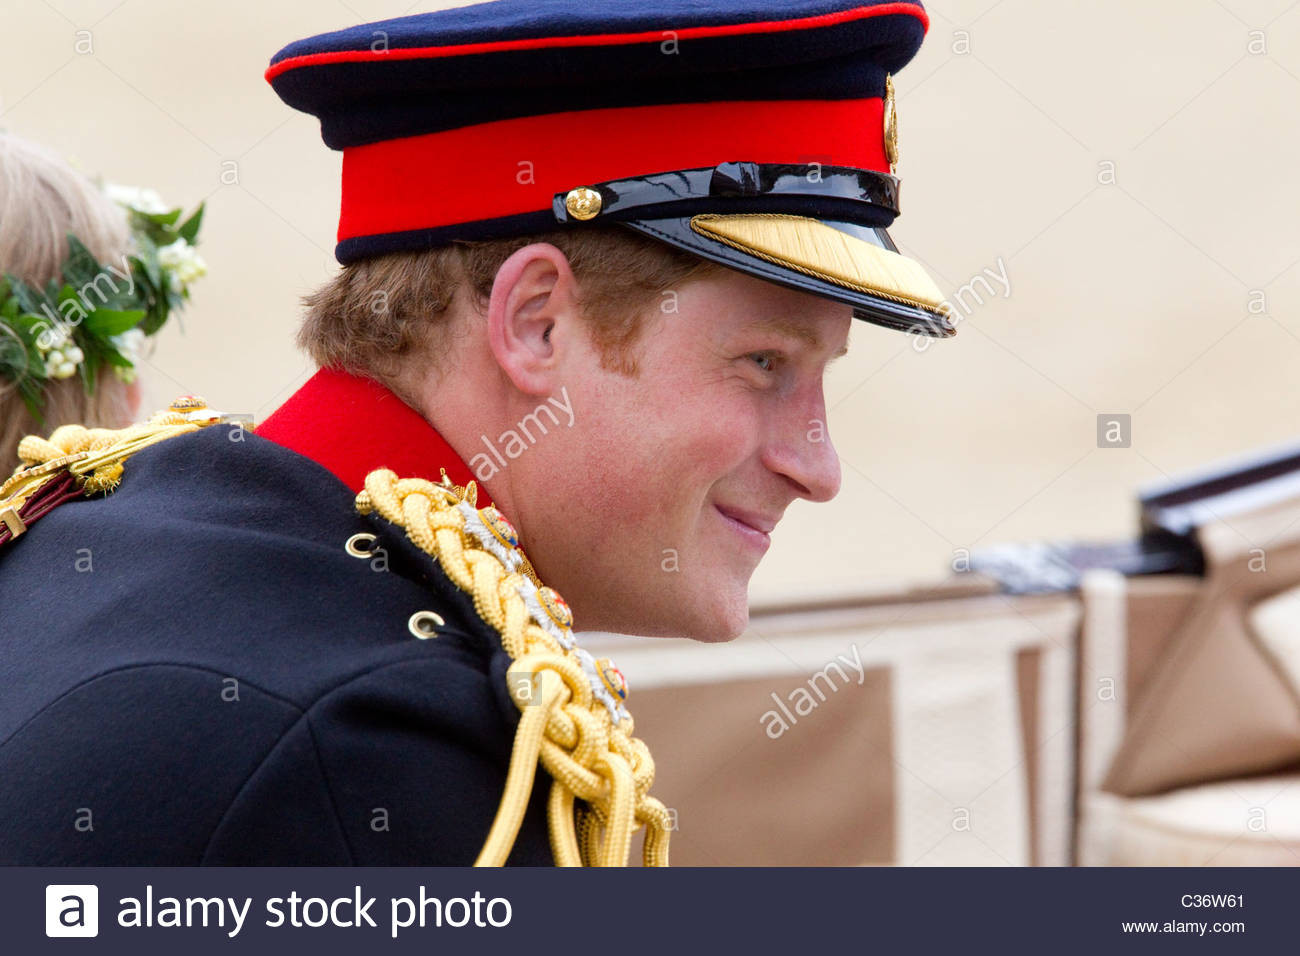 Königliche Hochzeit
 Königliche Kutsche königliche Hochzeit Horse Guards